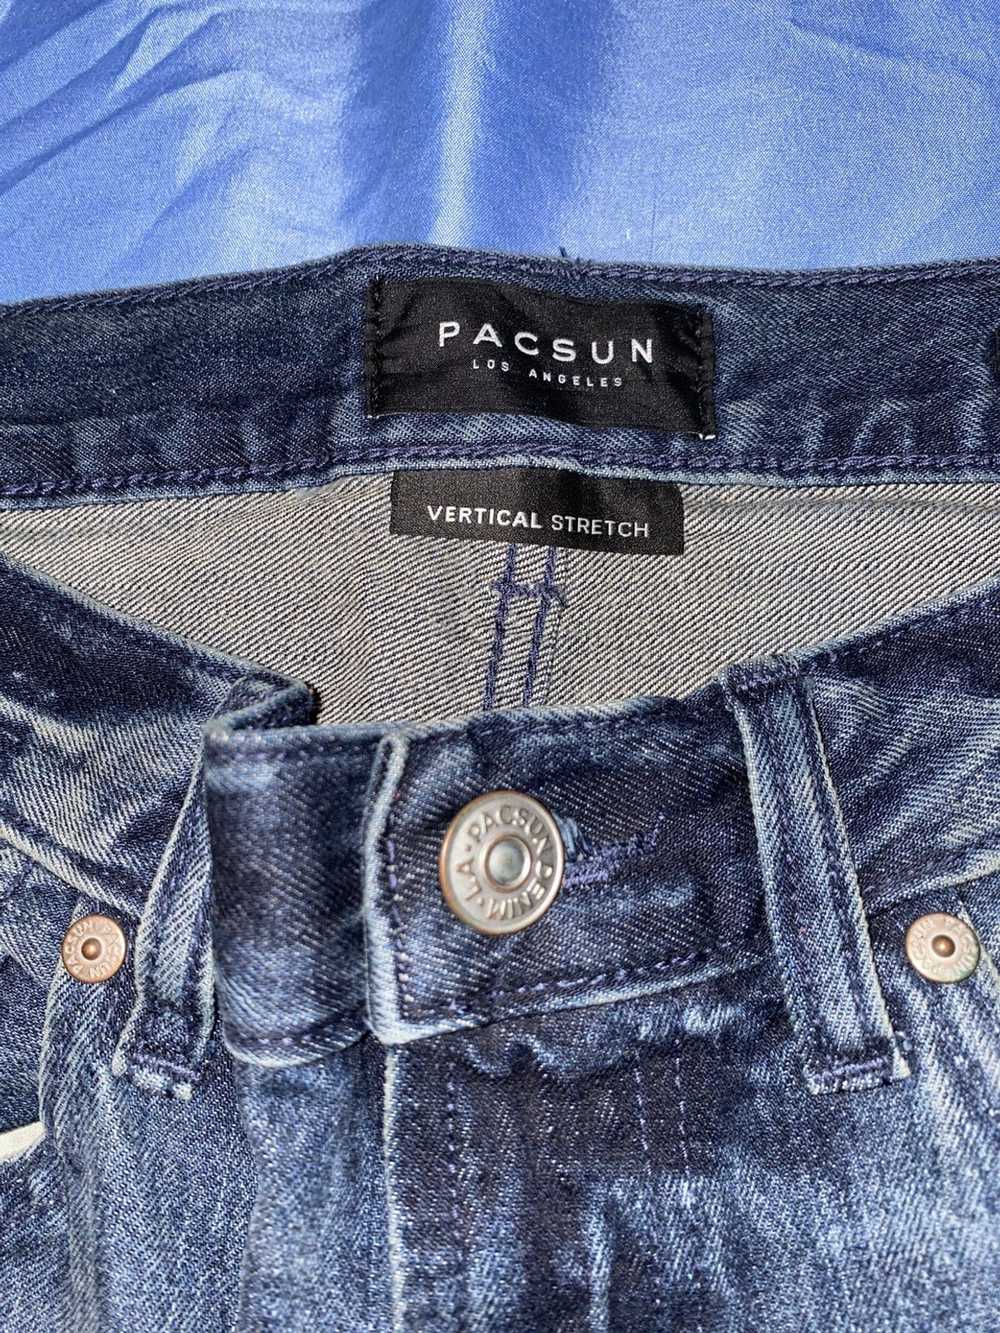 Pacsun Pacsun denim Jeans indigo fade - image 2